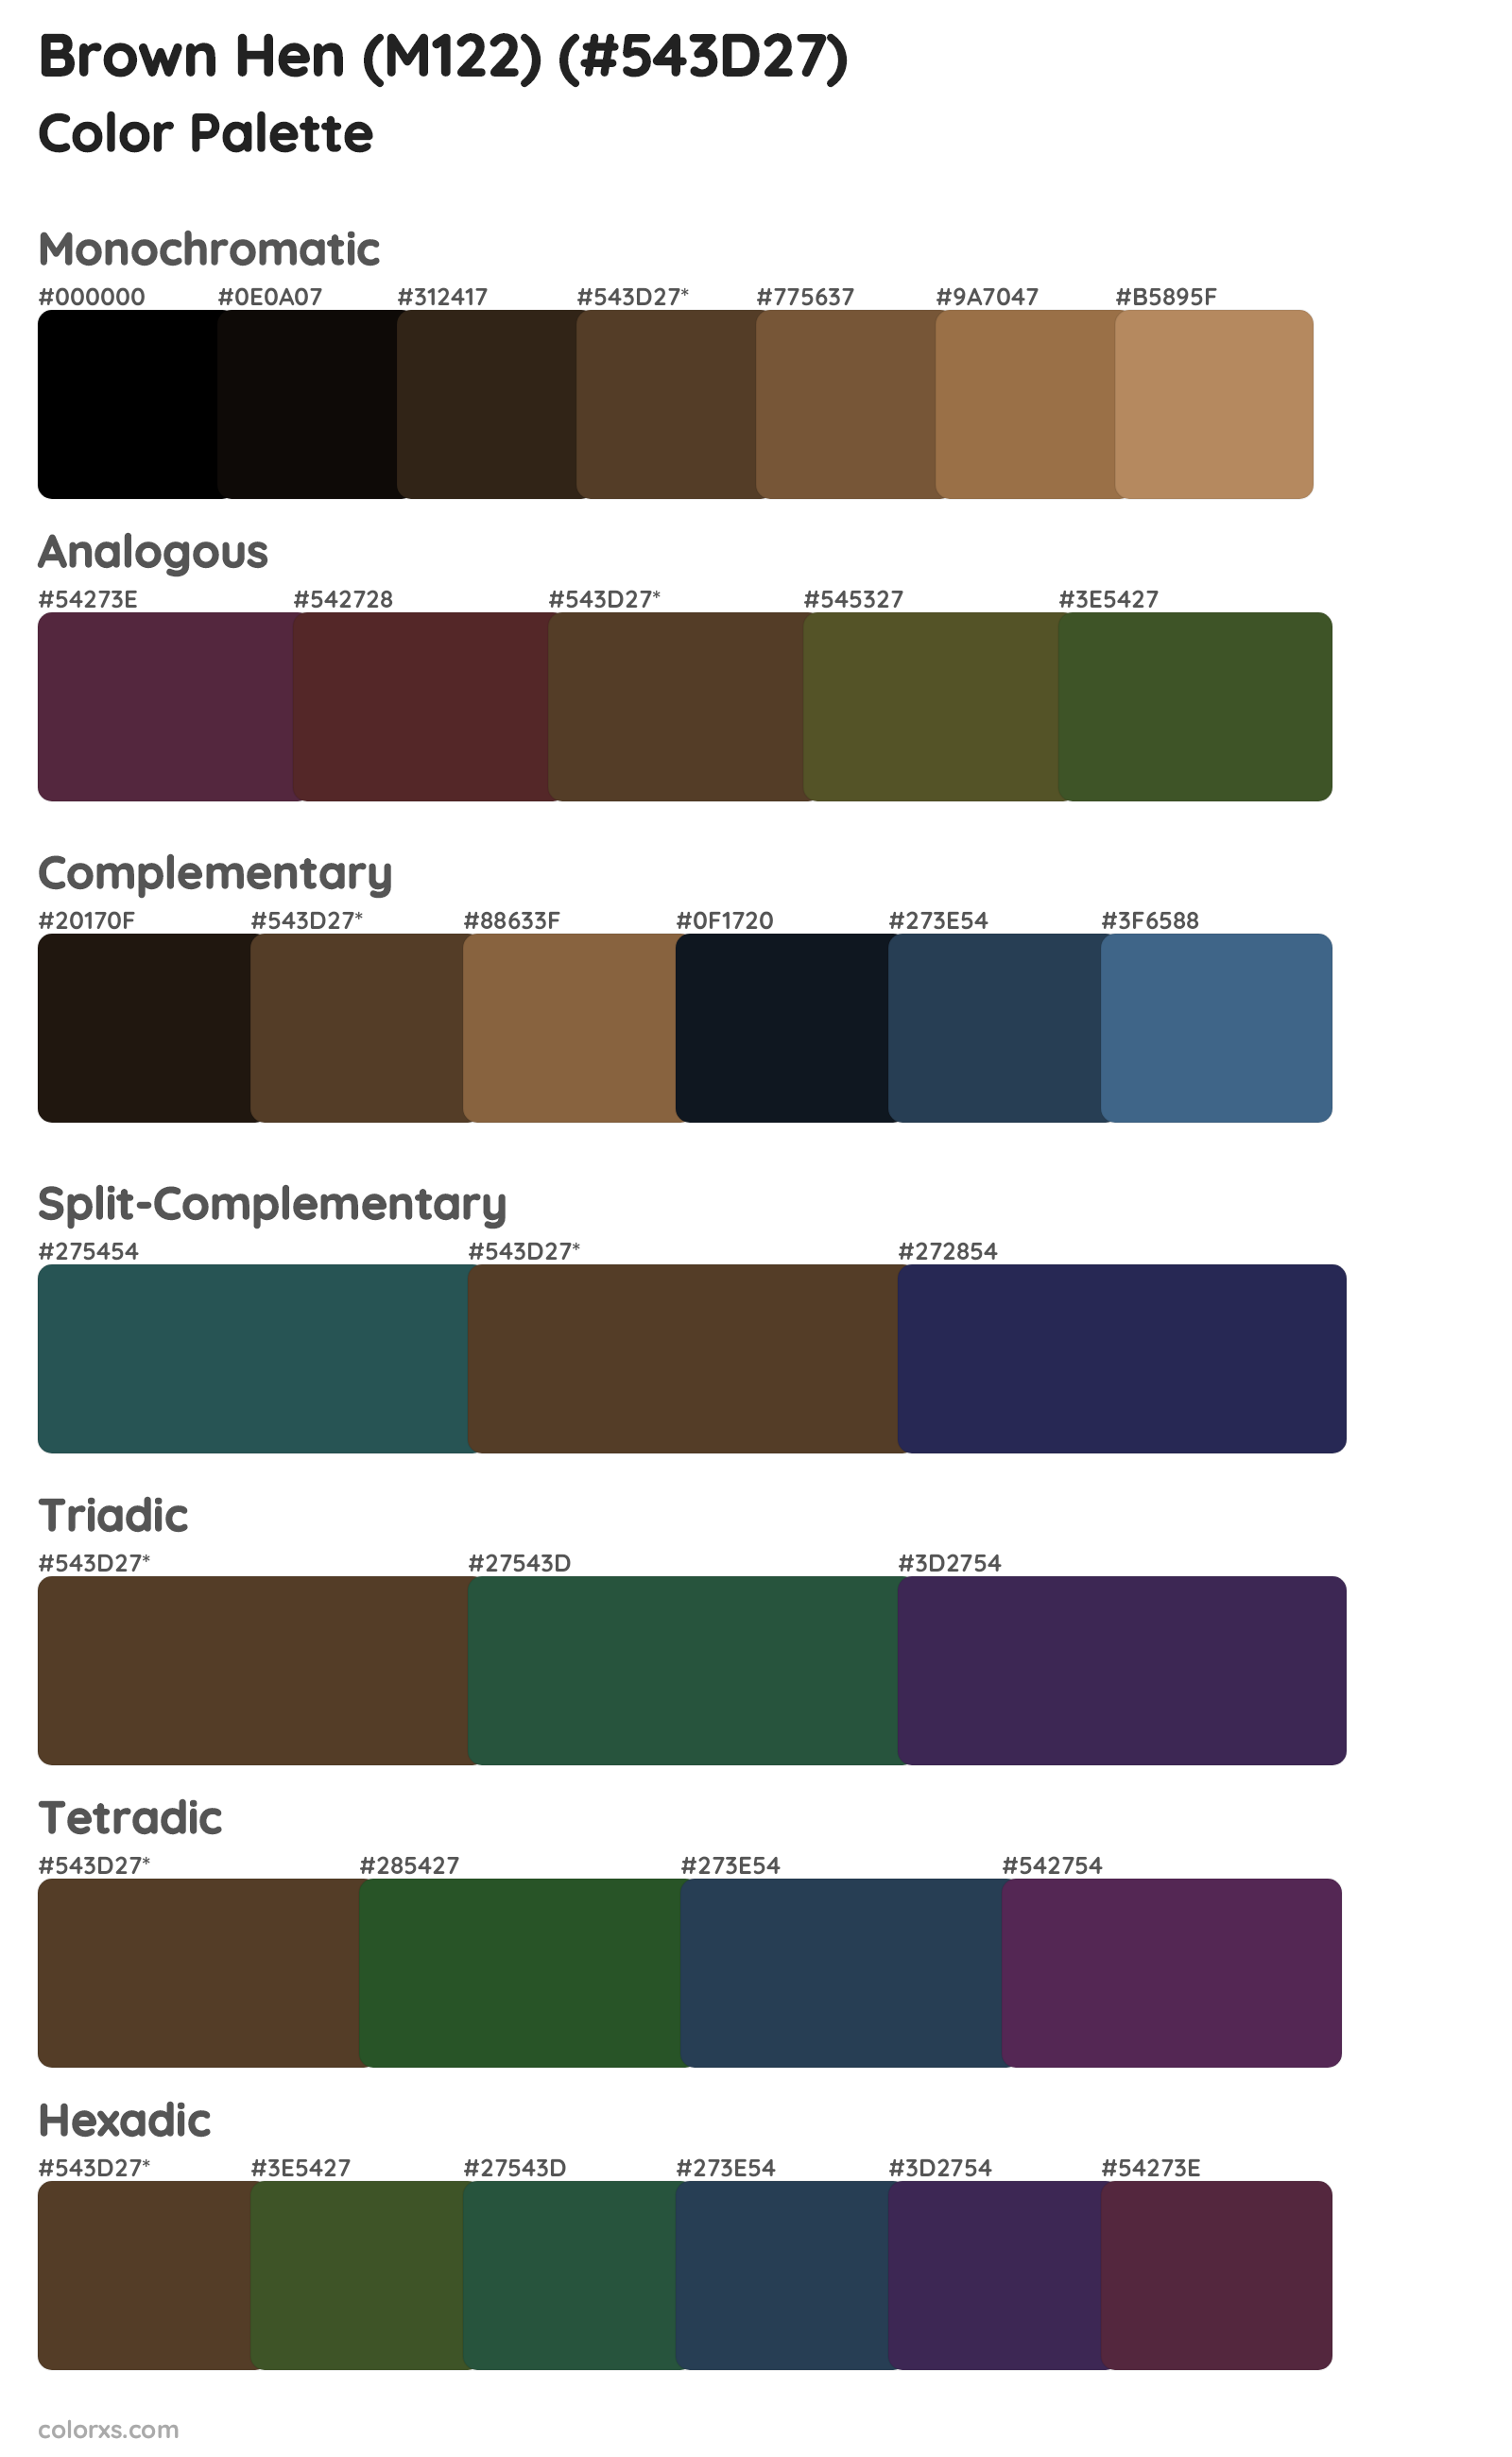 Brown Hen (M122) Color Scheme Palettes